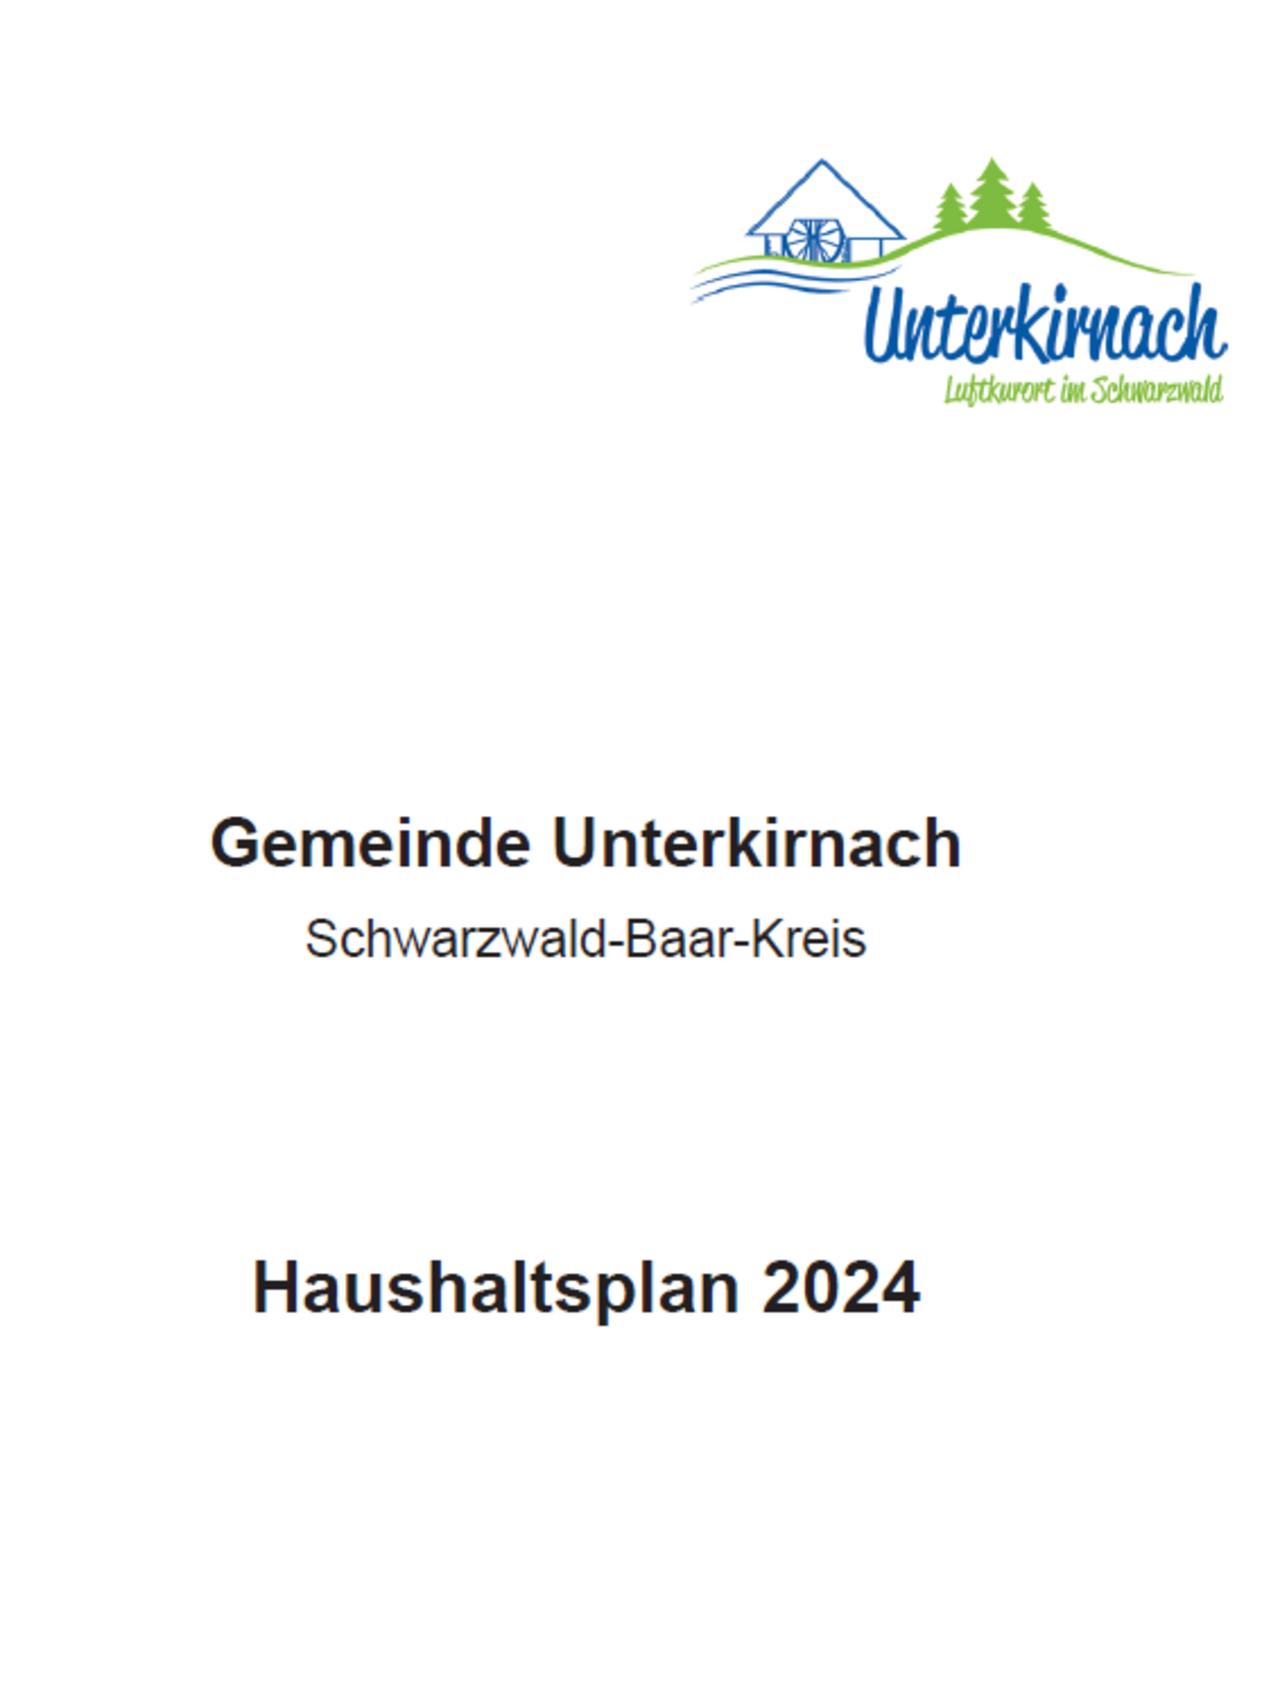 Haushaltsplan der Gemeinde Unterkirnach 2024